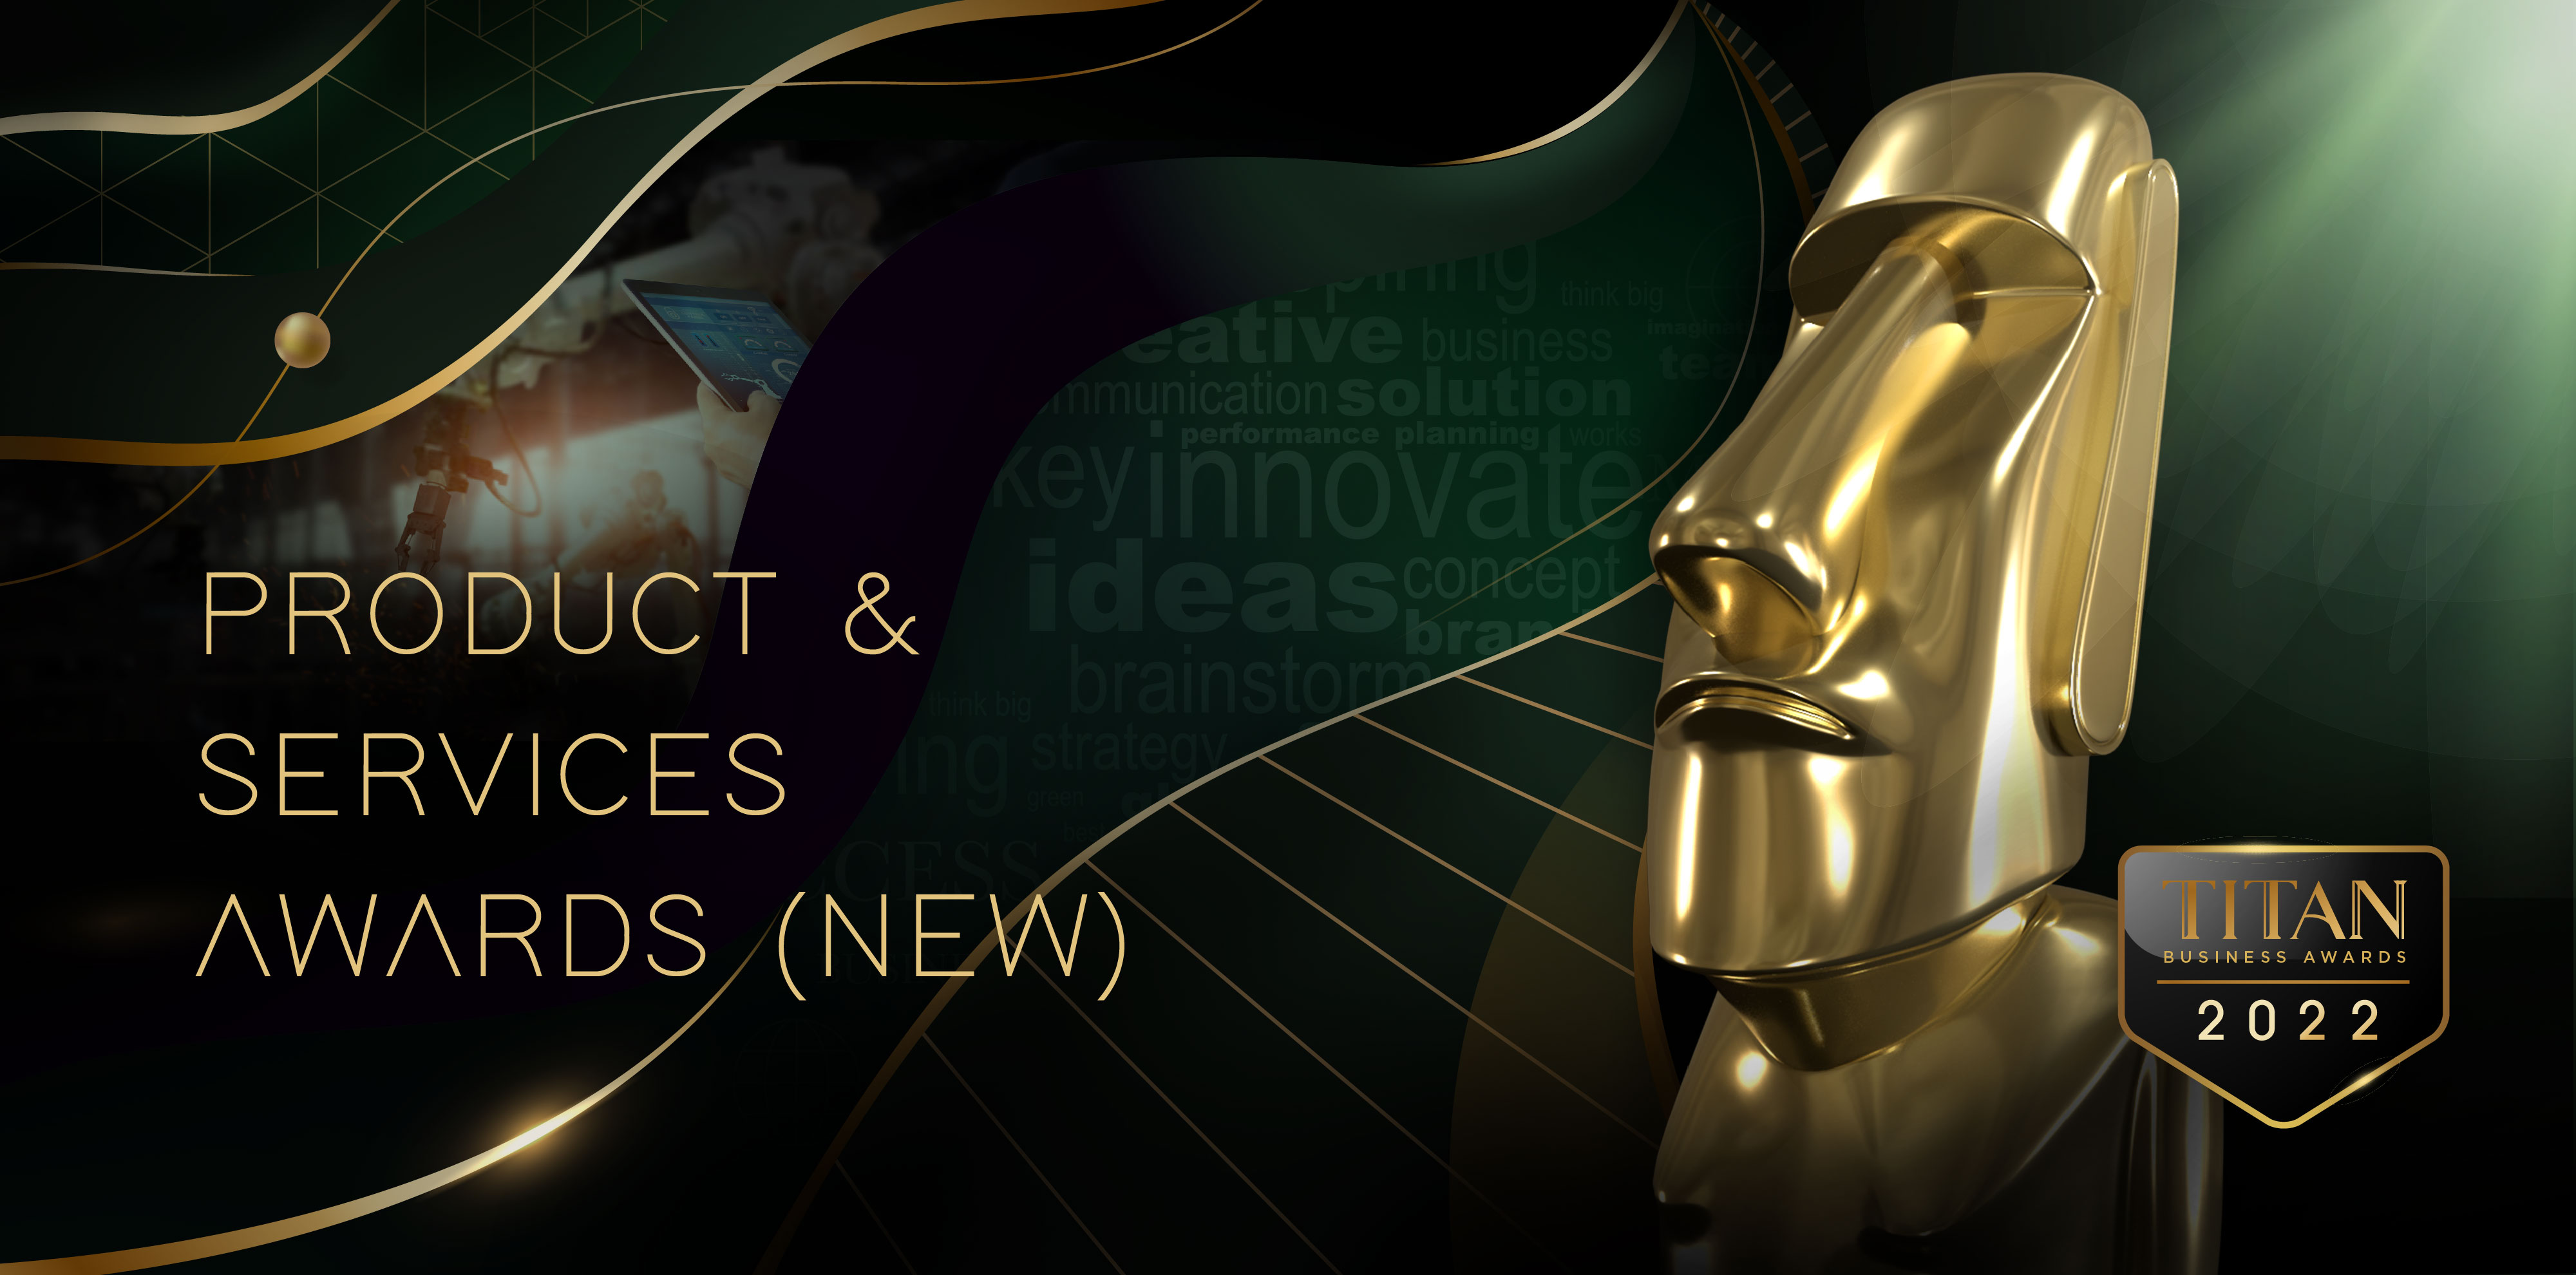 TITAN Product & Services Awards 2022 | TITAN Awards